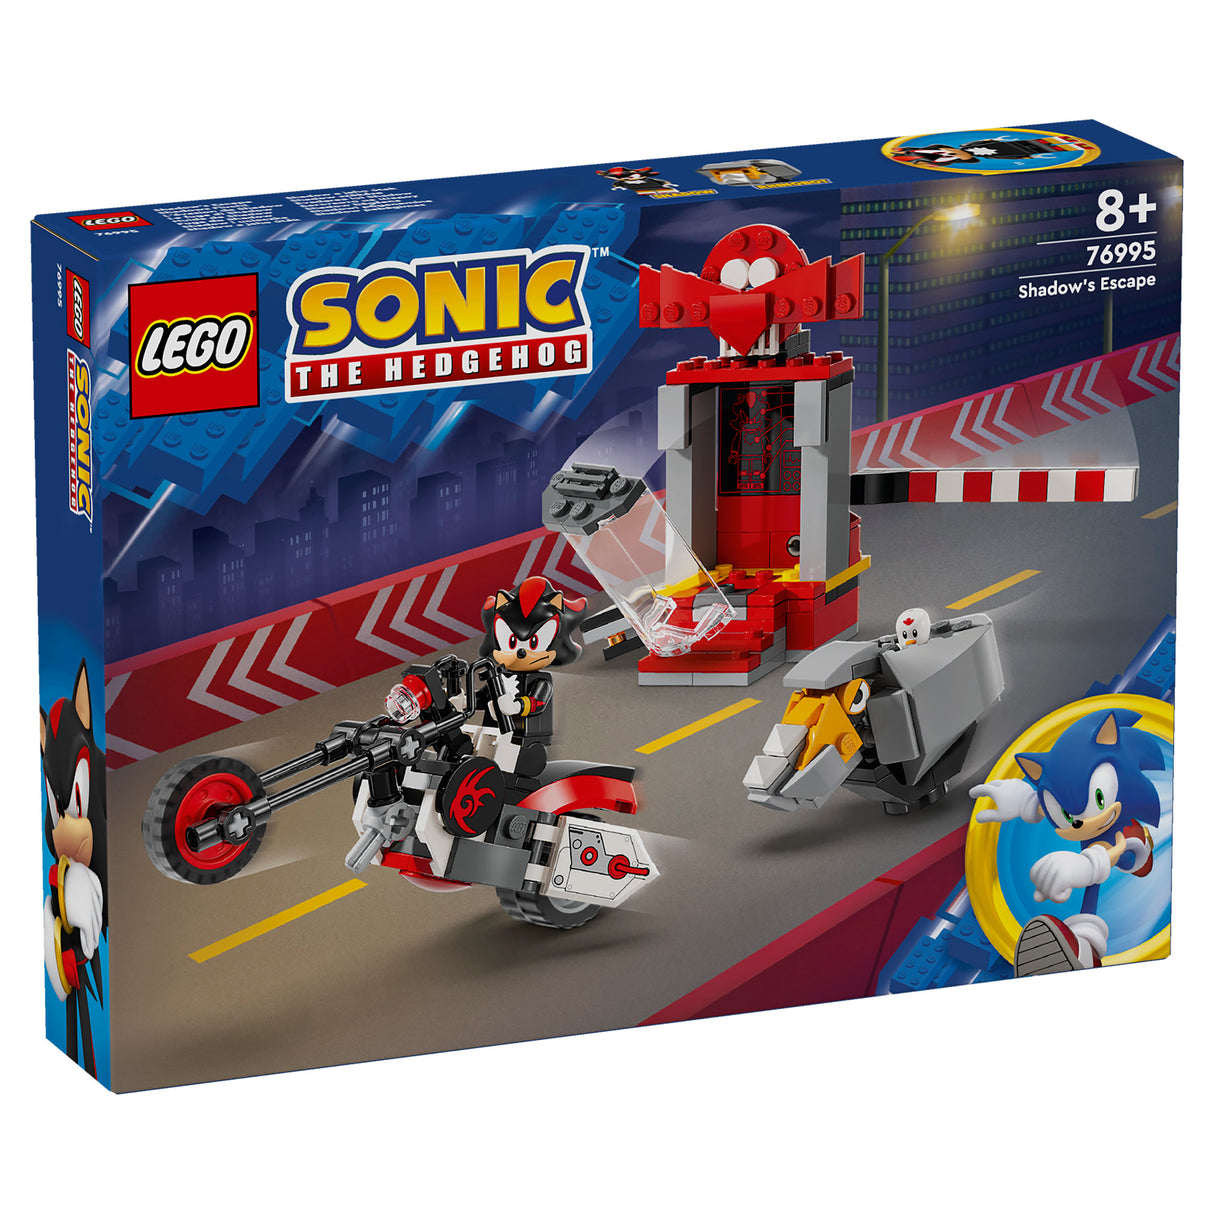 LEGO Sonic The Hedgehog Shadow the Hedgehog Escape 76995, (196-pieces)